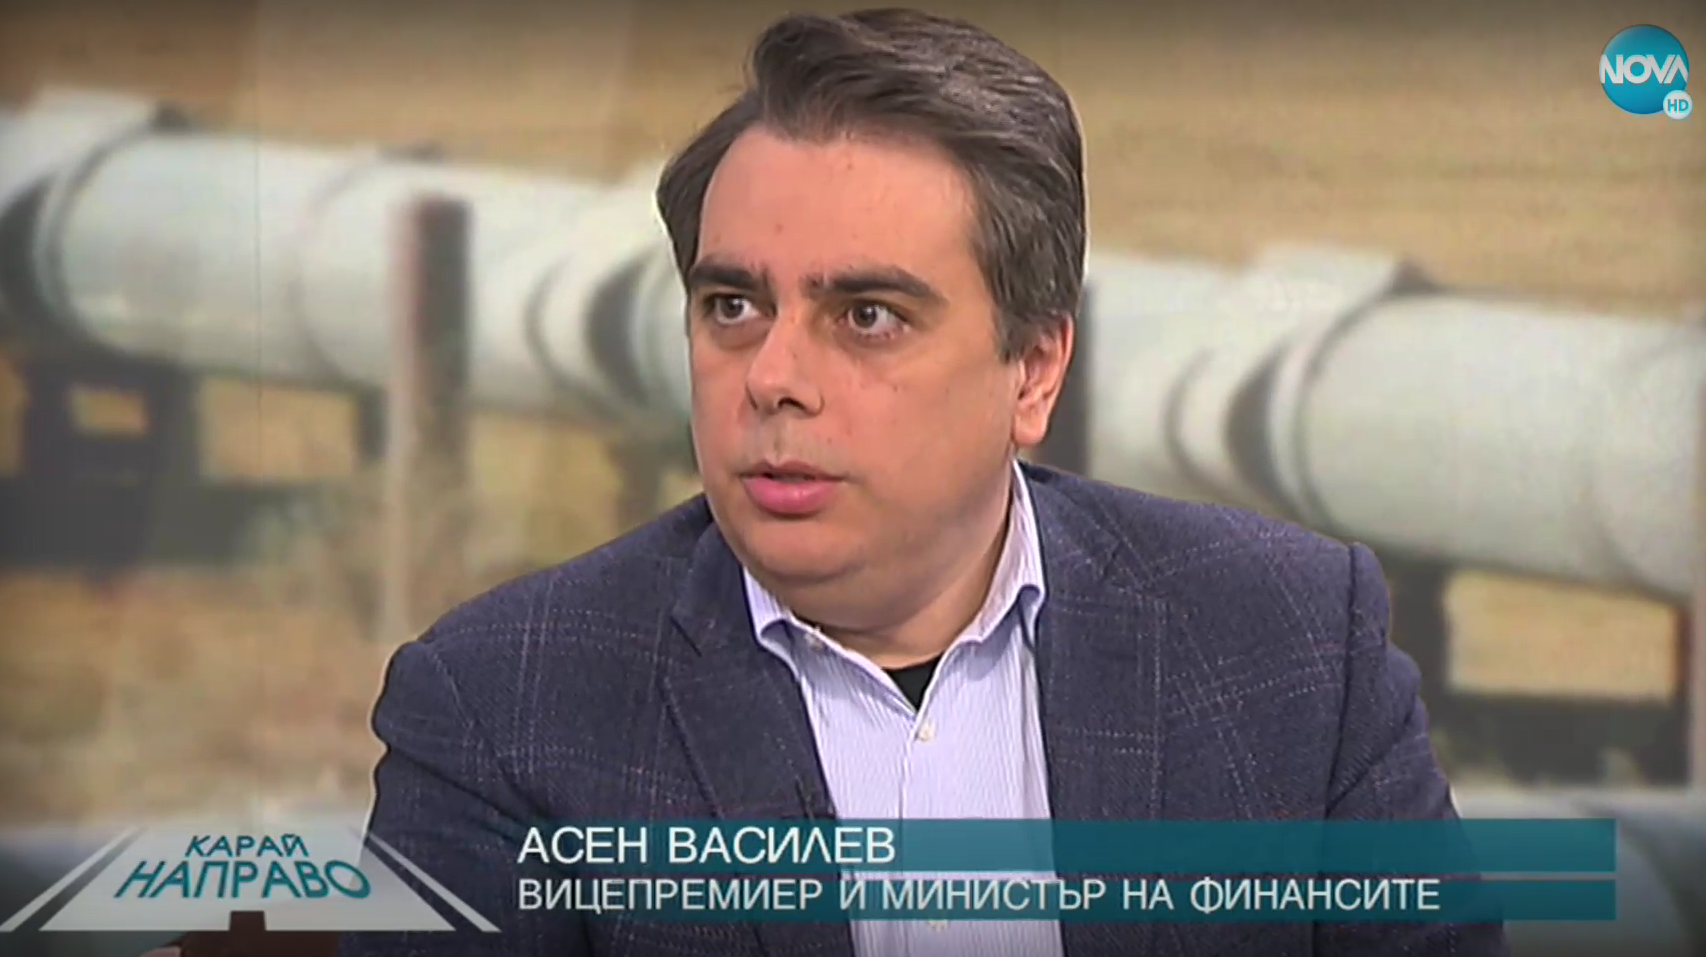 Вицепремиерът и министър на финансите Асен Василев в предаването "Карай направо" по Нова телевизия